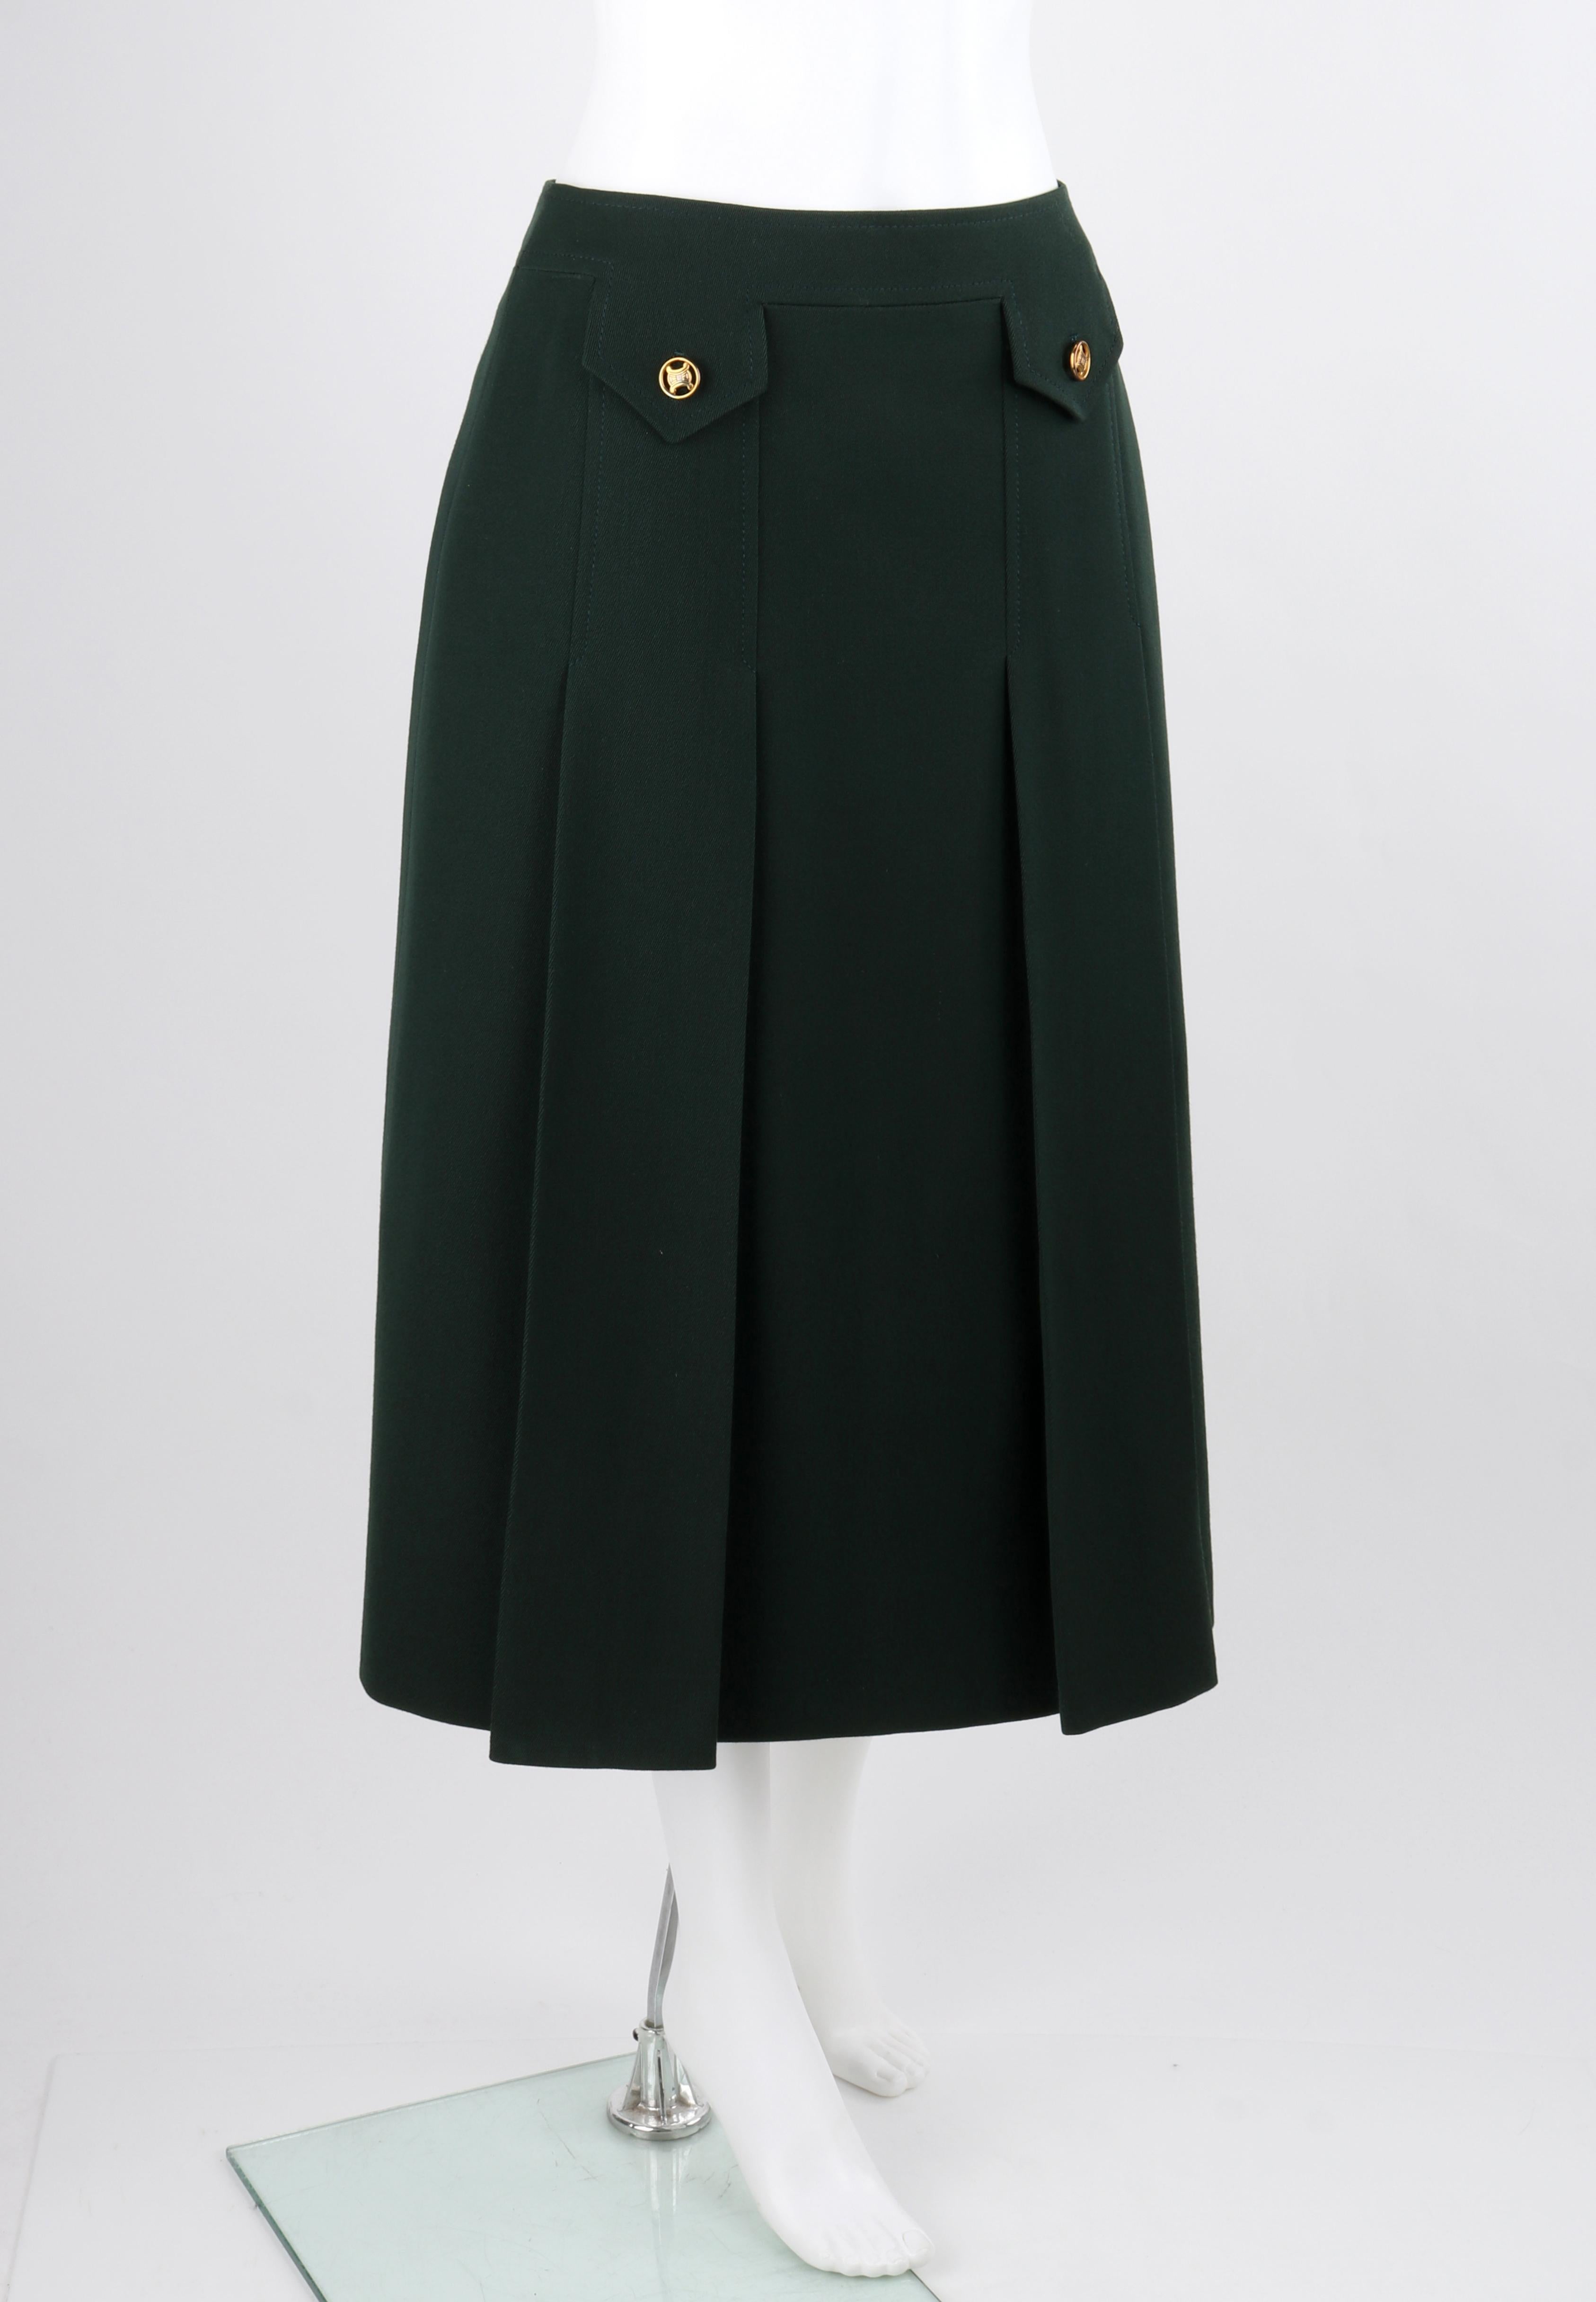 Celine PARIS c.1970's Forest Green Wool Box Pleated A Line Midi Skirt

Marque / Fabricant : Celine Paris
Circa : 1970's
Designer : Celine Vipiana
Style : Jupe A Line
Couleur(s) : Vert forêt, Or
Doublée : Oui
Tissu marqué : 100% laine de Laine
Sans